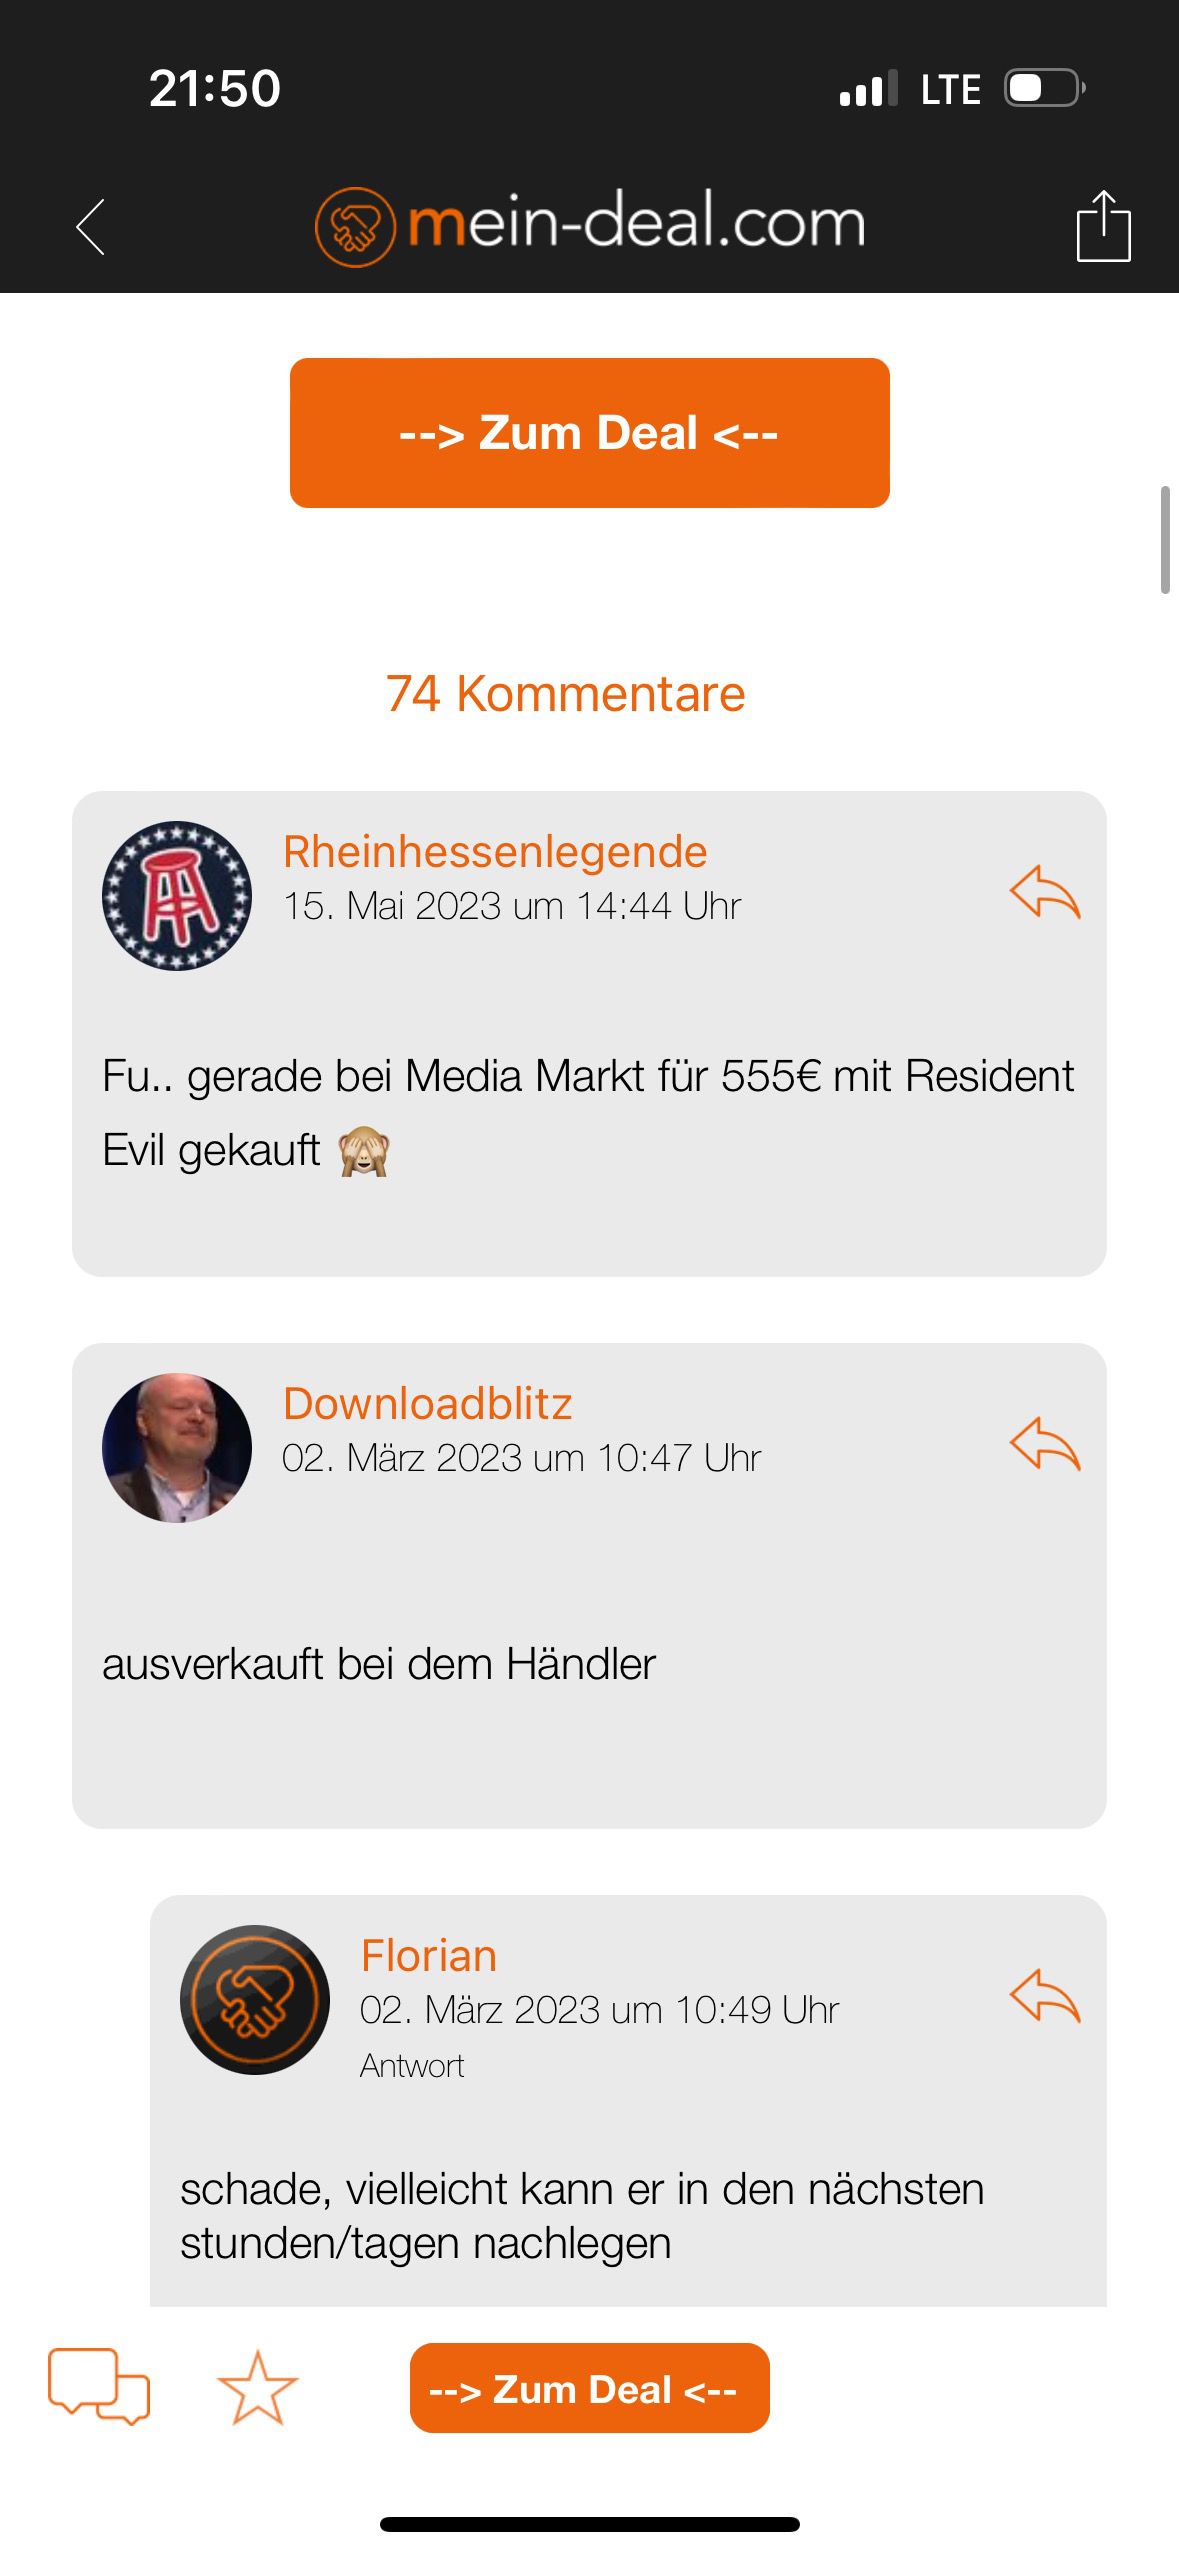 Feedback iOS User   Mein Deal App   Laden die Kommentare ? (Bitte kommentieren)